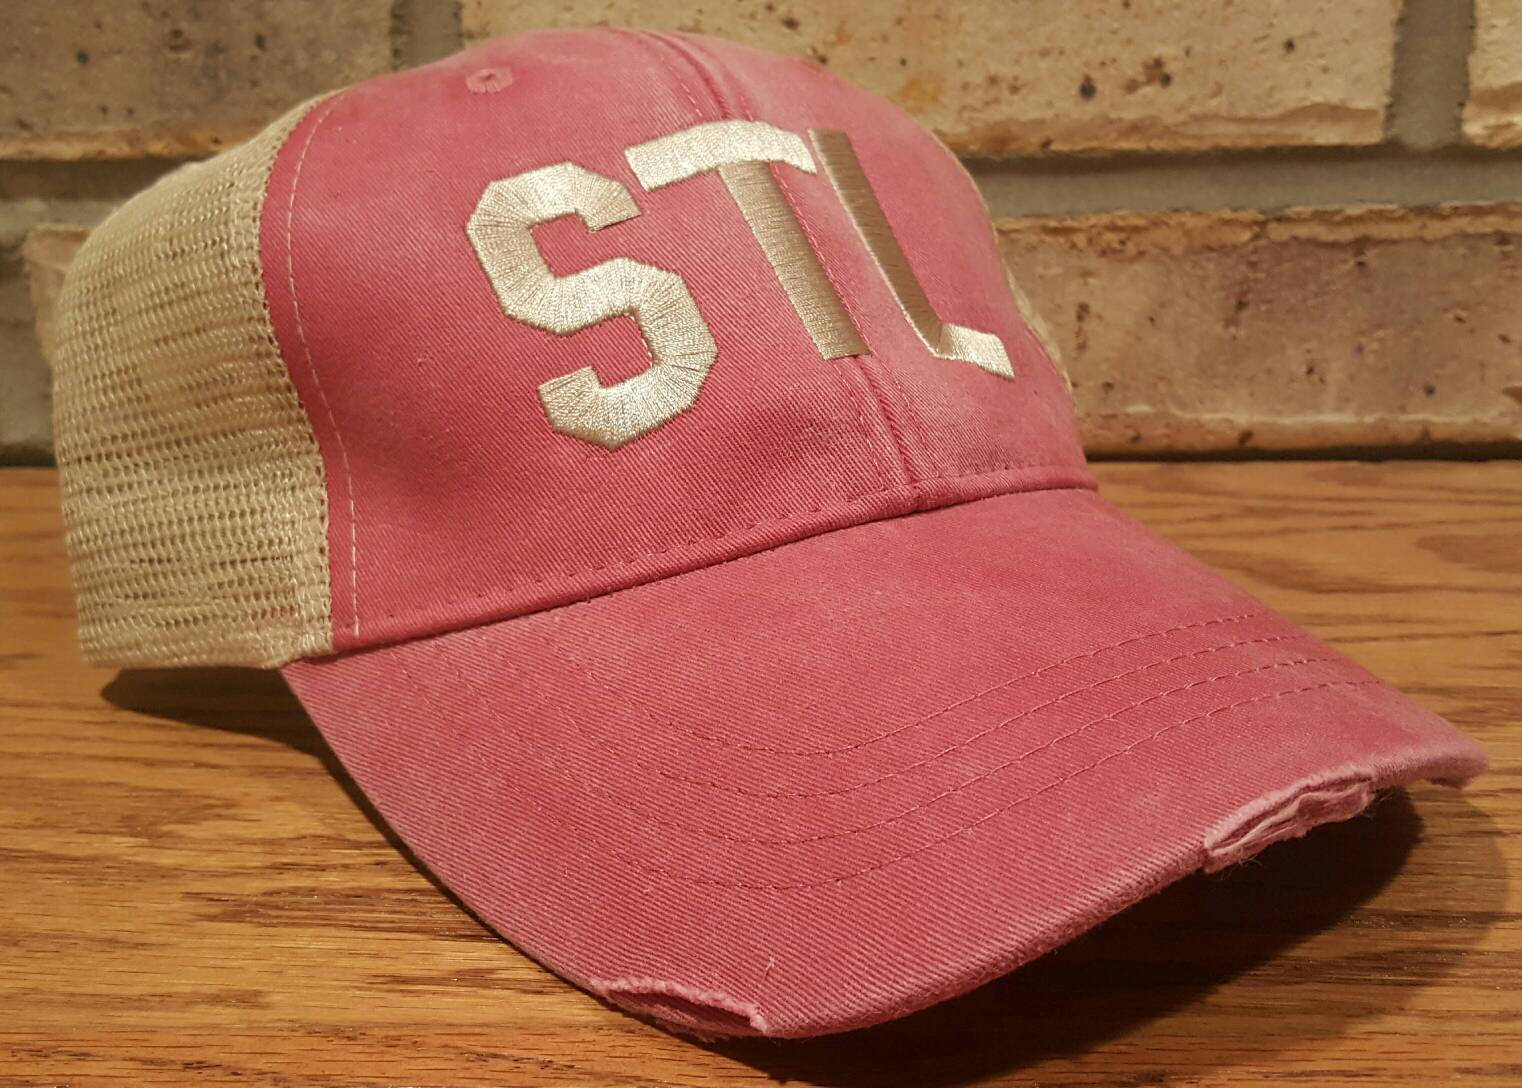 STL Airport Code Trucker Hat